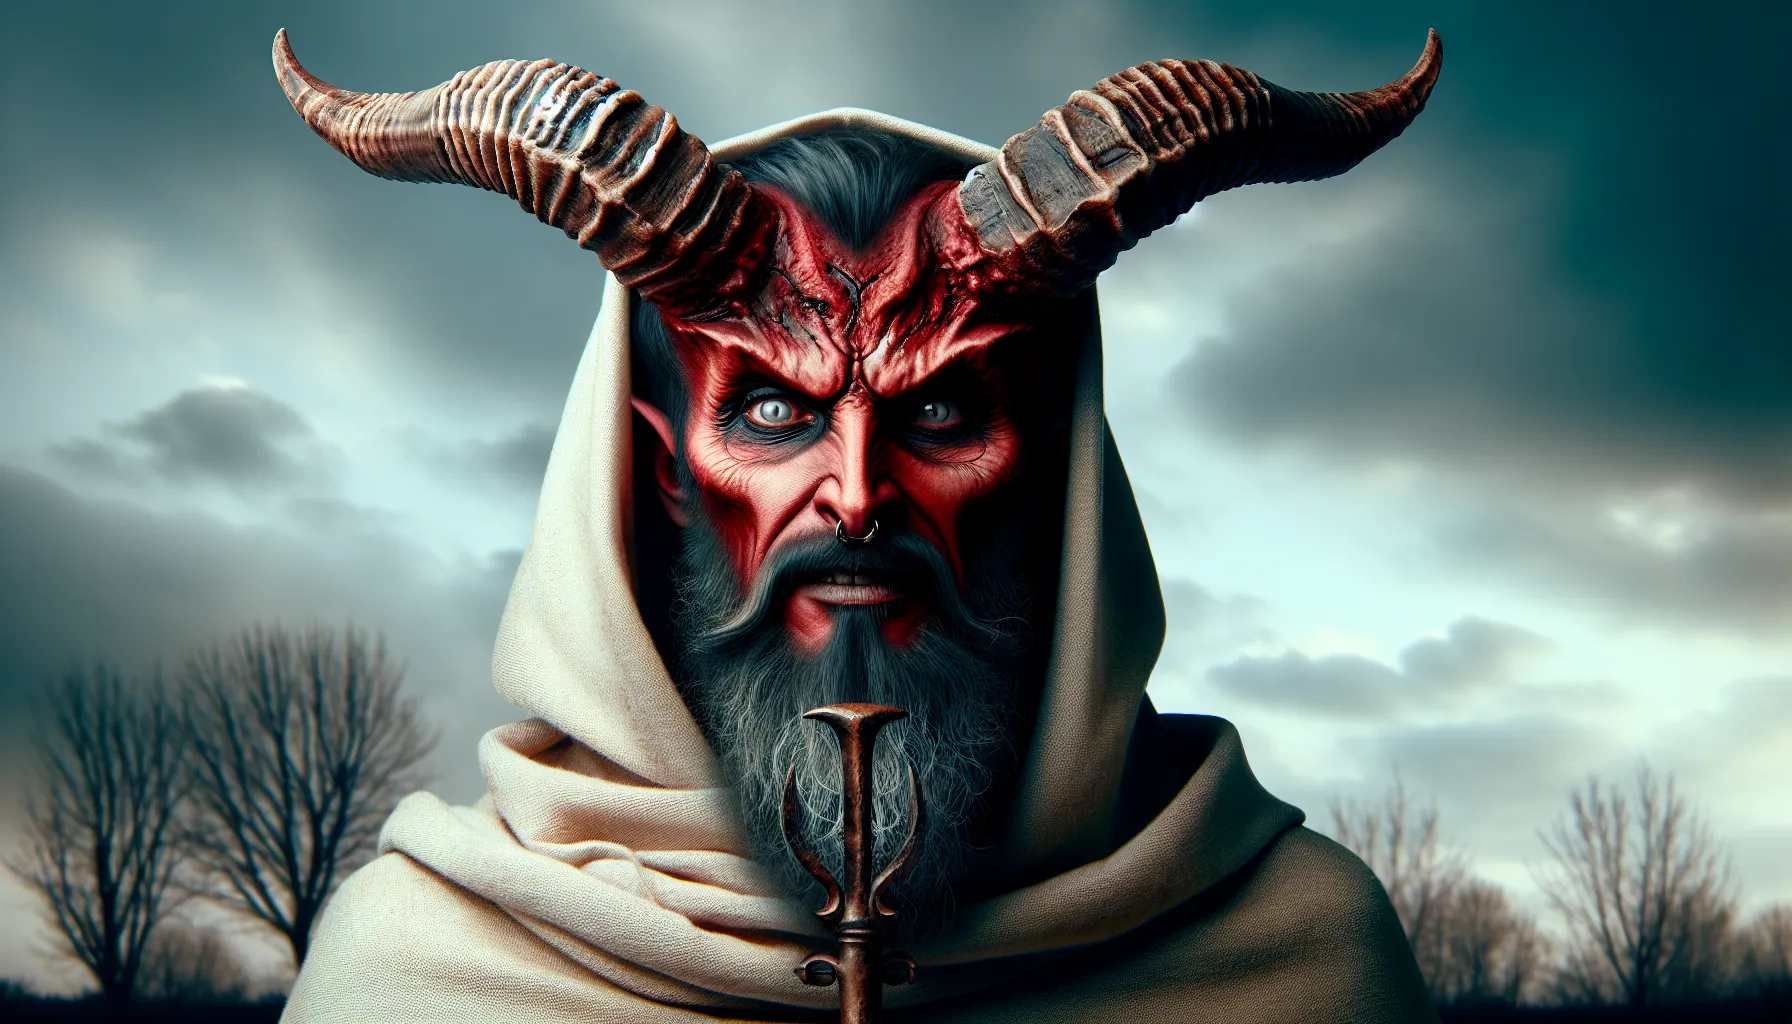 Imagen ilustrativa de un demonio con cuernos y una expresión malévola